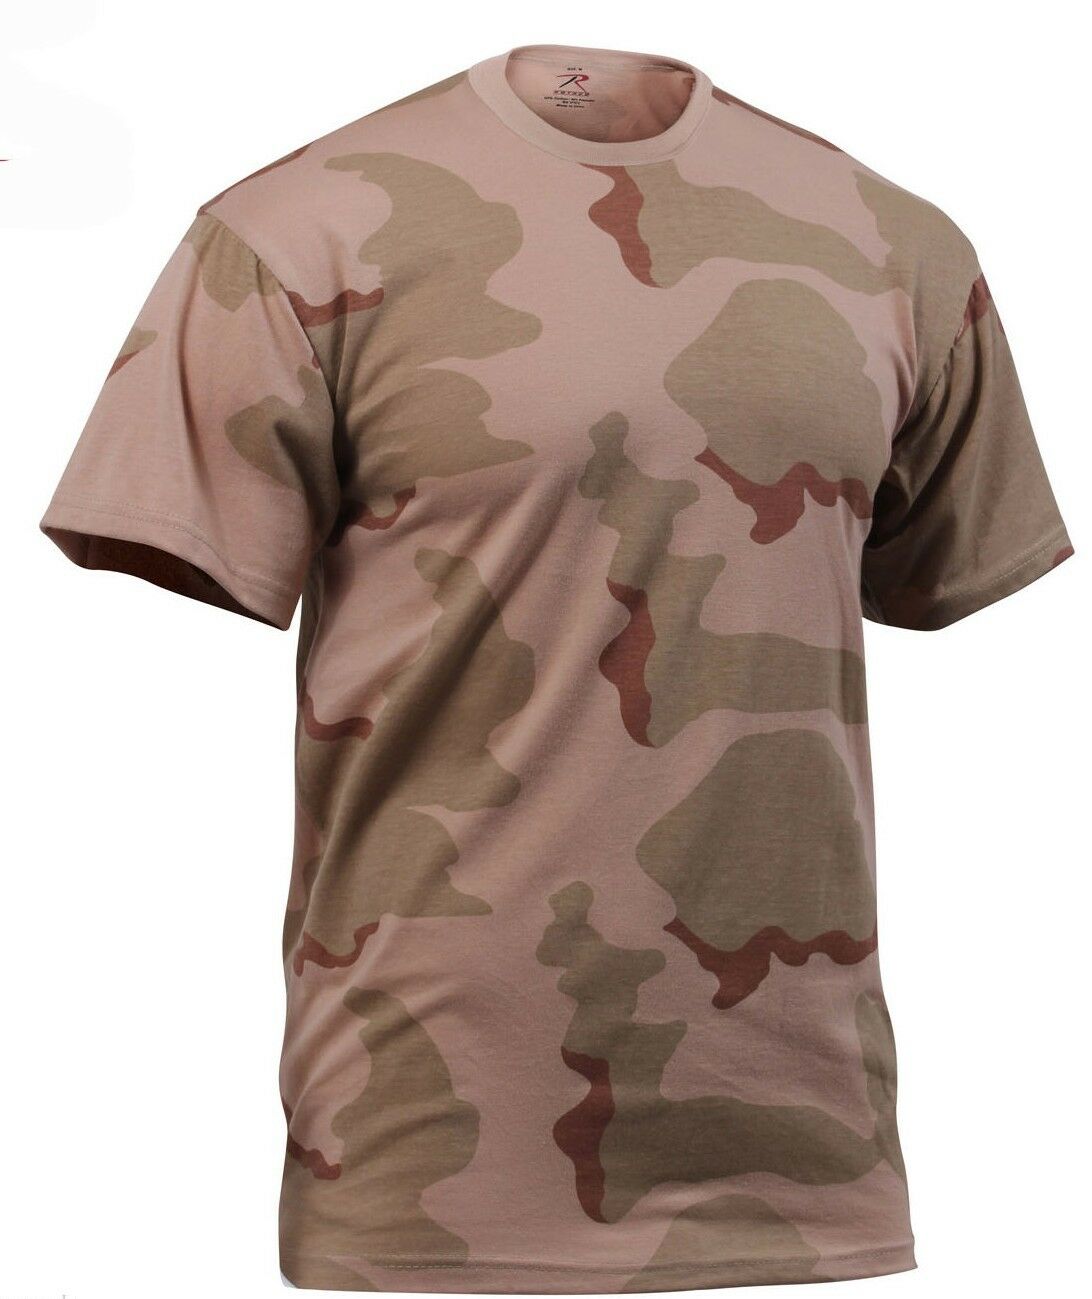 Rothco Camo T-shirt - Tri Color Desert Camo